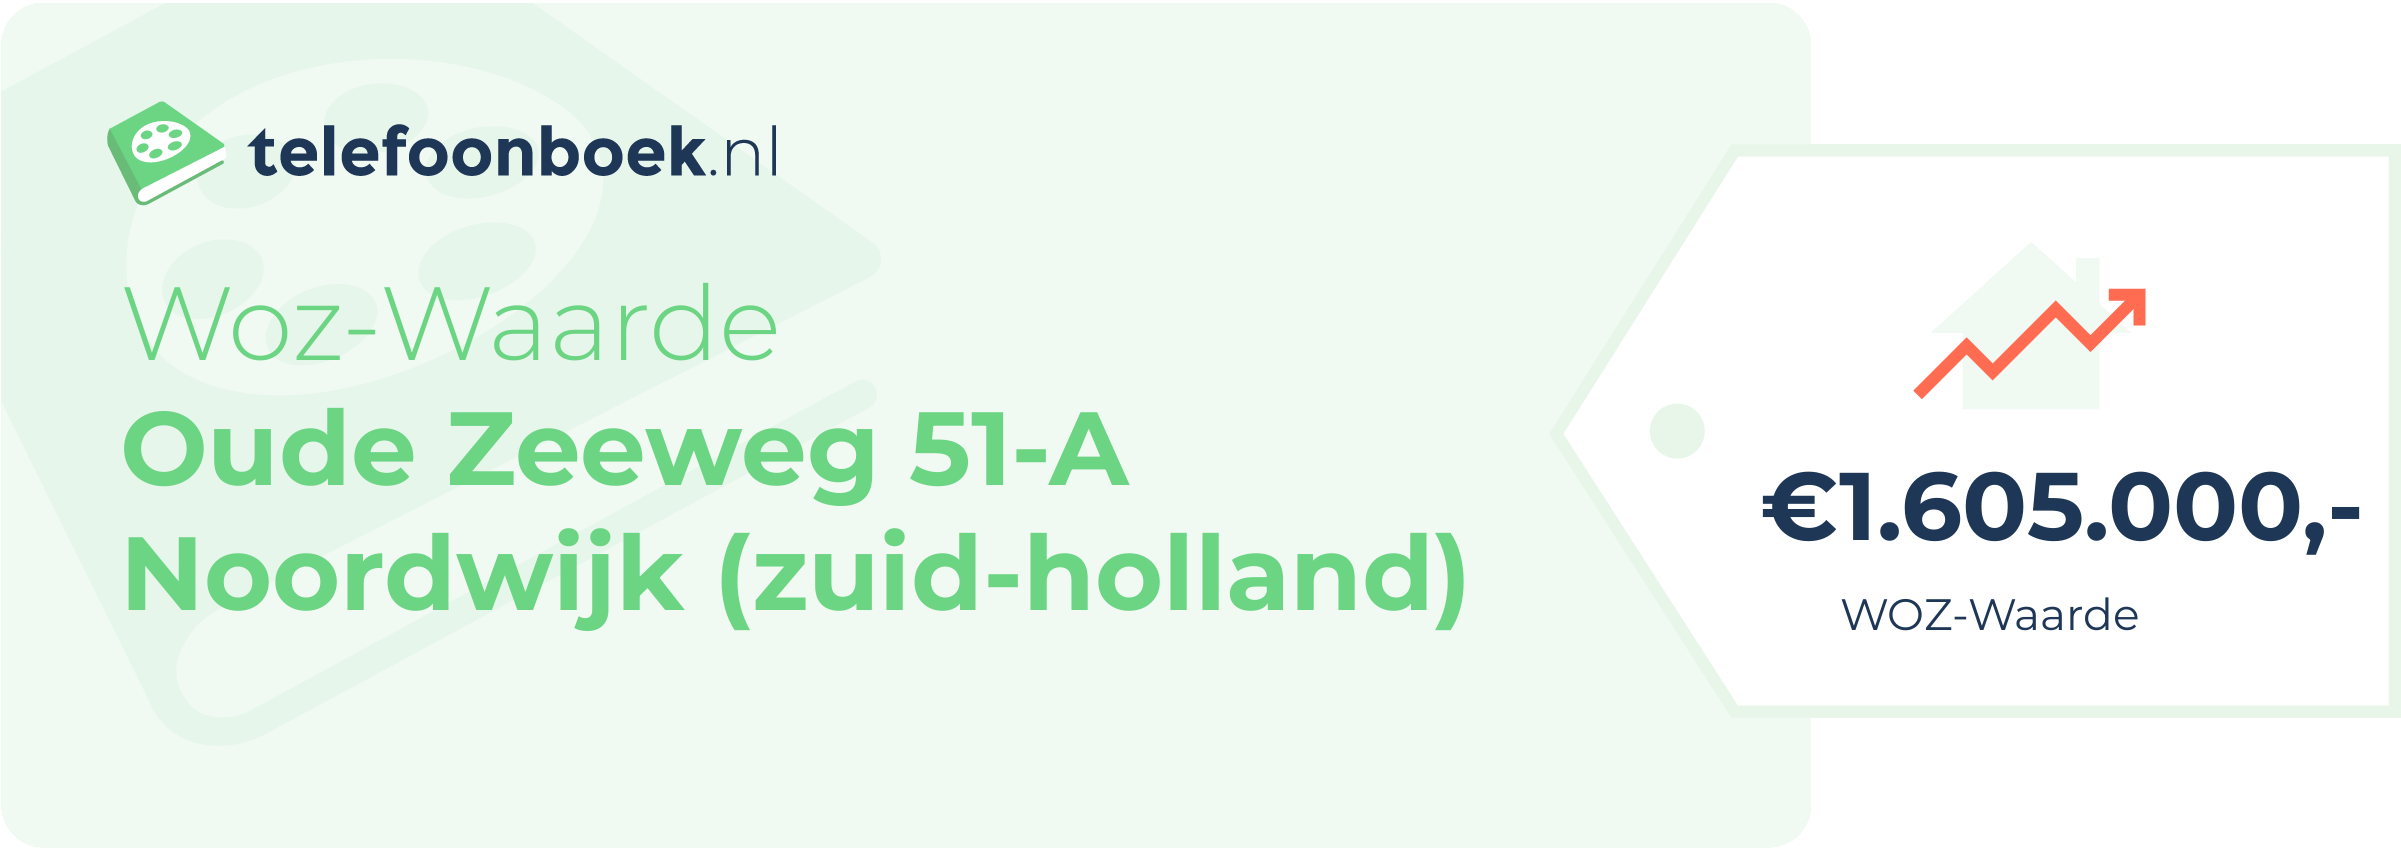 WOZ-waarde Oude Zeeweg 51-A Noordwijk (Zuid-Holland)